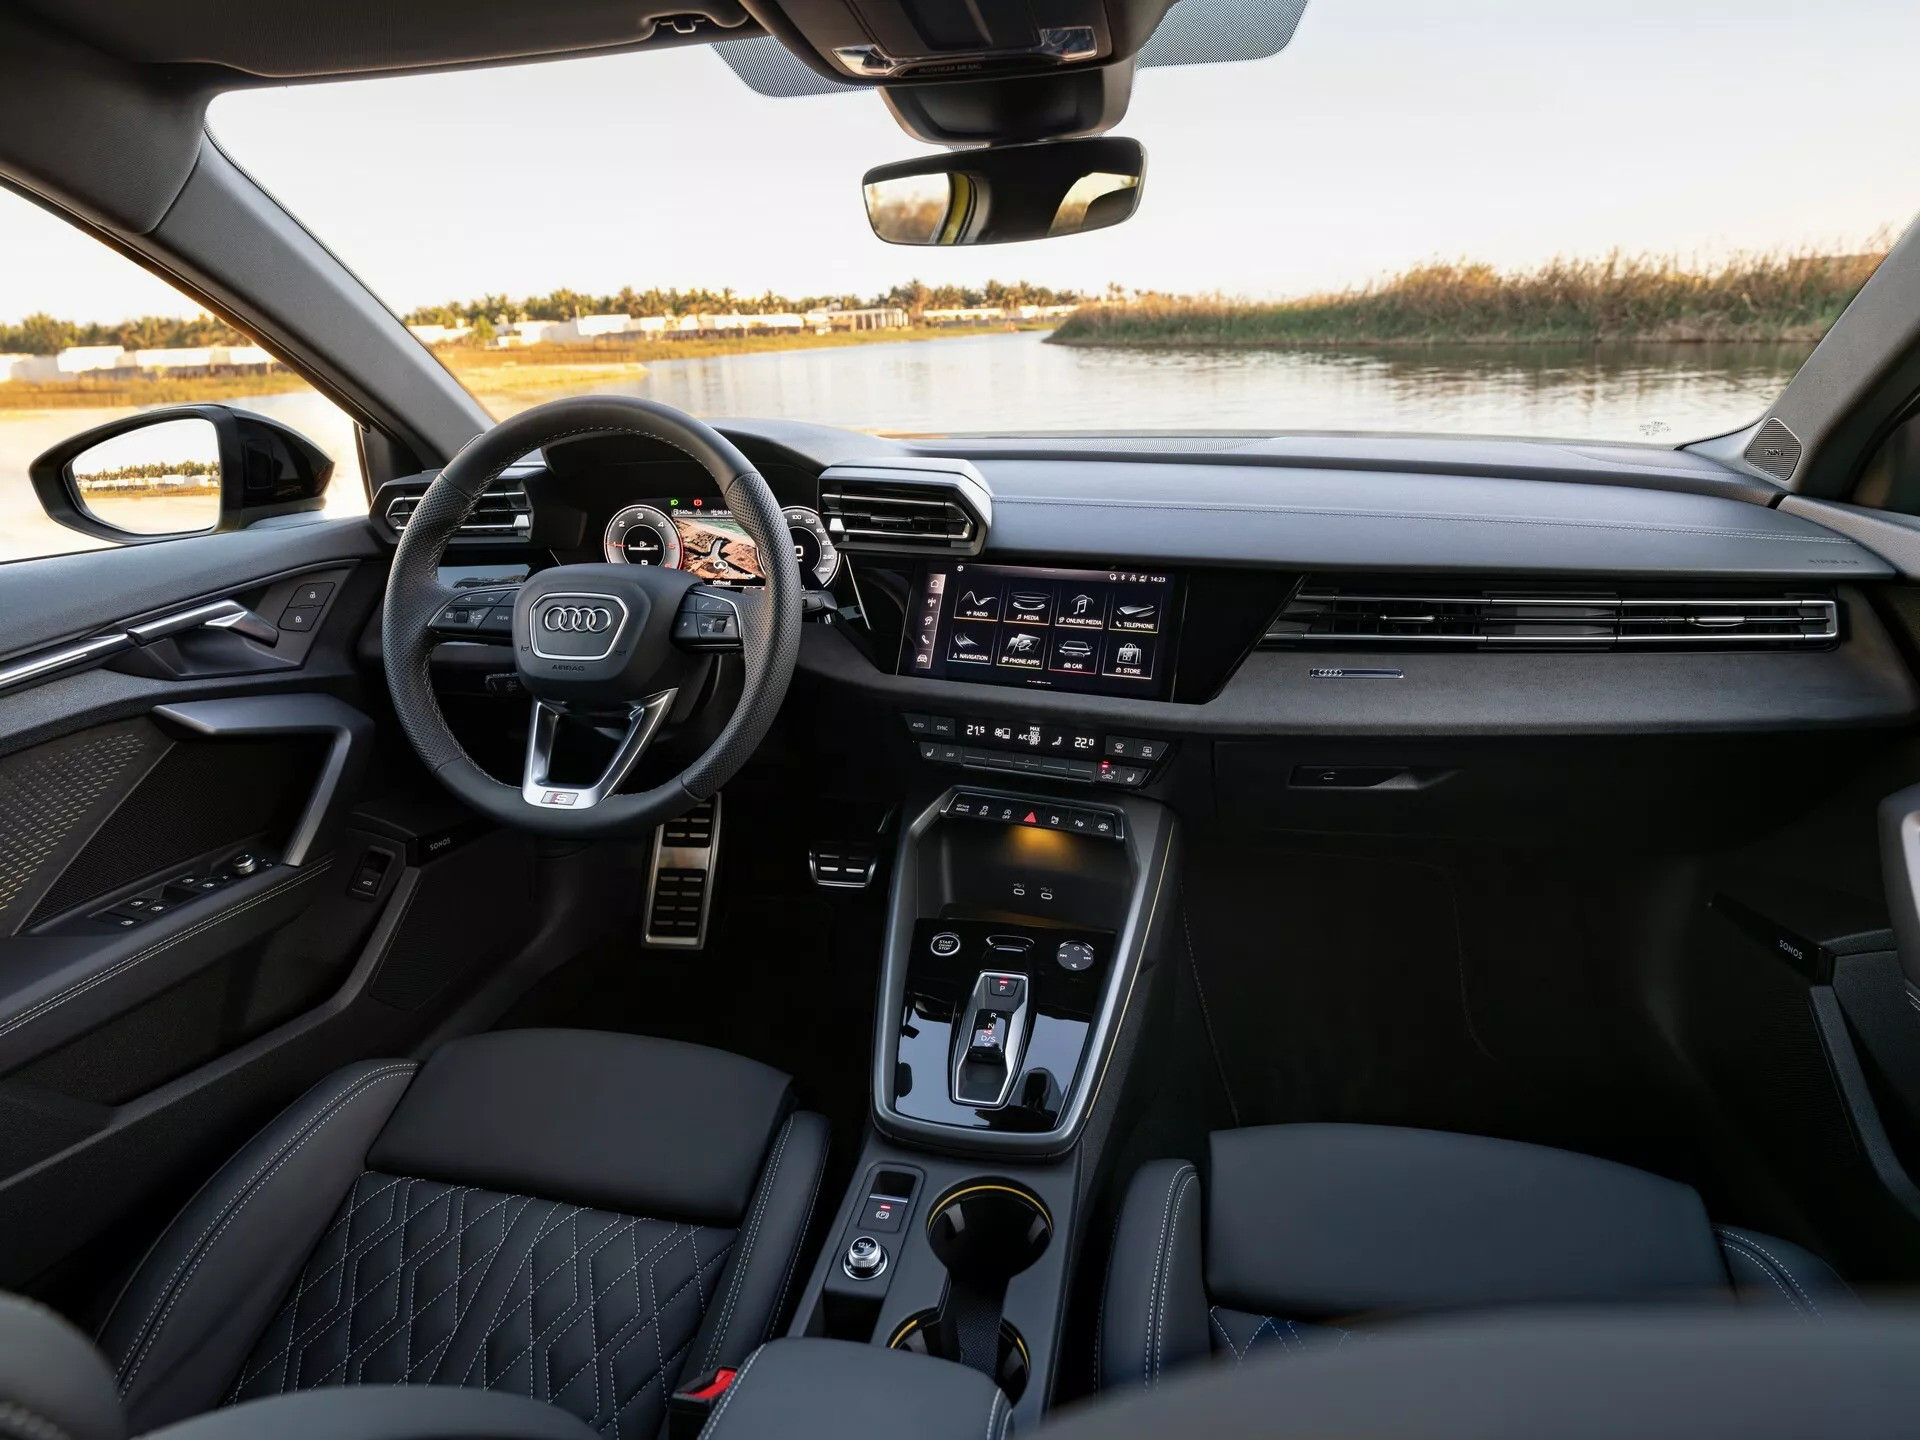 Nội thất xe được thay đổi khá nhiều chi tiết nhỏ lẻ nhưng tổng thể nhìn chung giữ nguyên - Ảnh: Audi